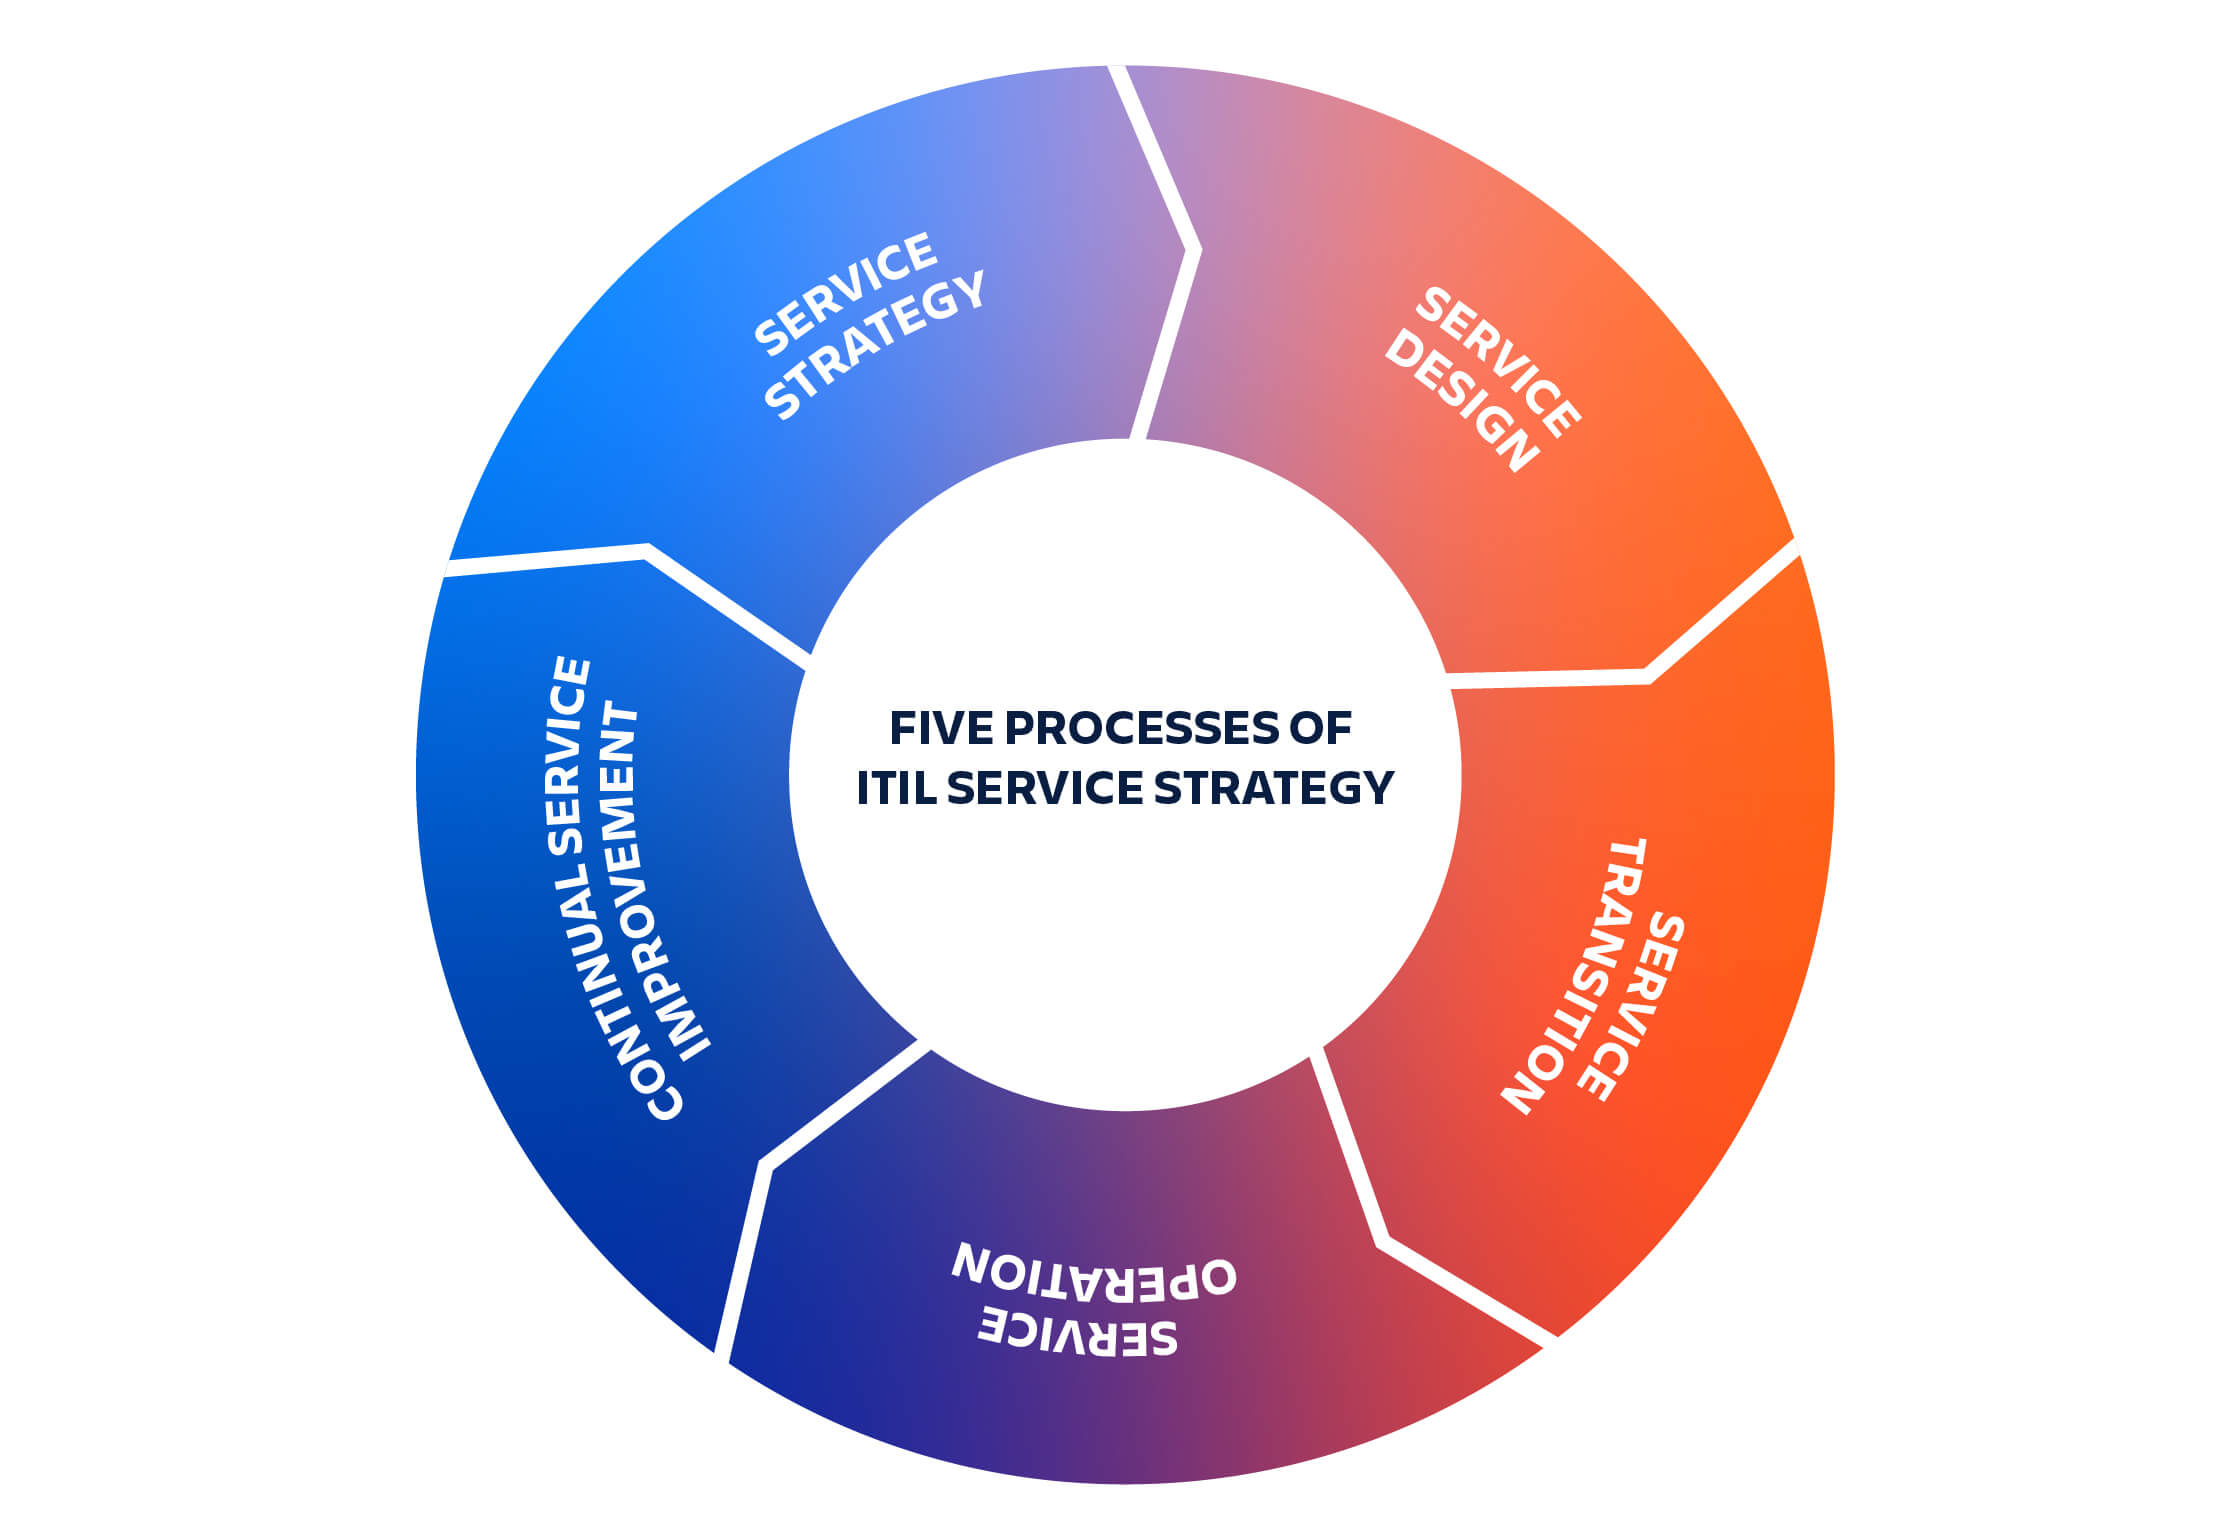 Cinq processus de la stratégie de services ITIL : la stratégie de services passe de la conception des services à la transition, puis à l'exploitation des services et enfin à l'amélioration continue des services